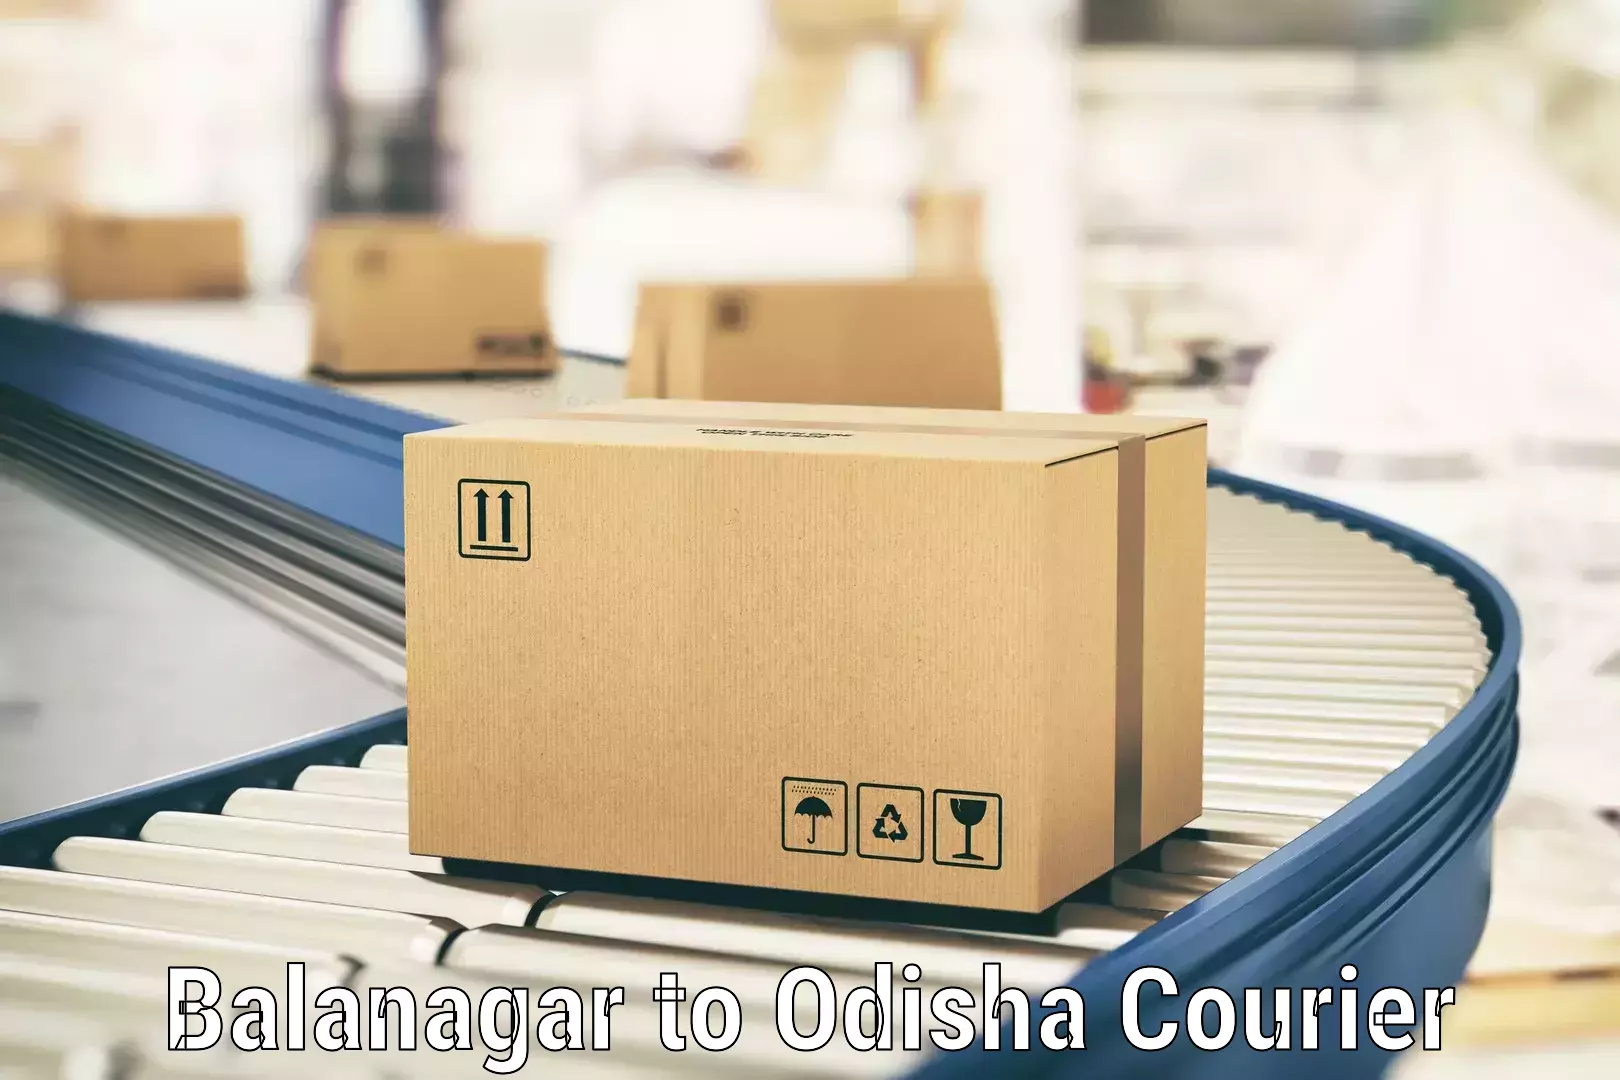 Premium courier solutions Balanagar to Odisha